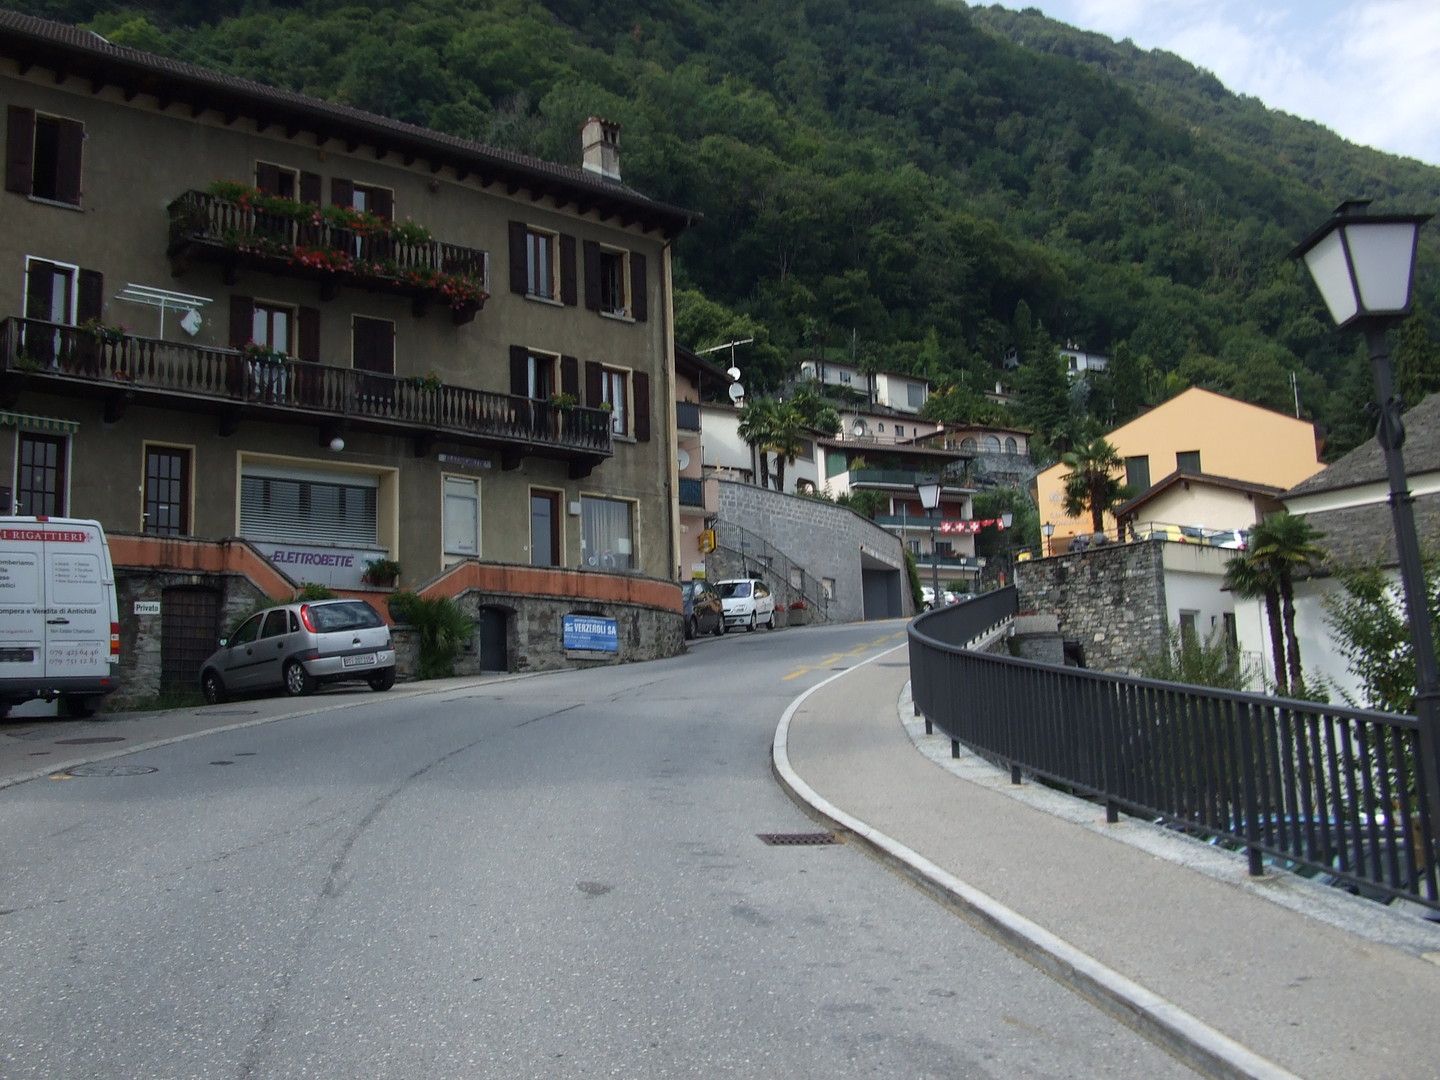 In Ronco sopra Ascona.